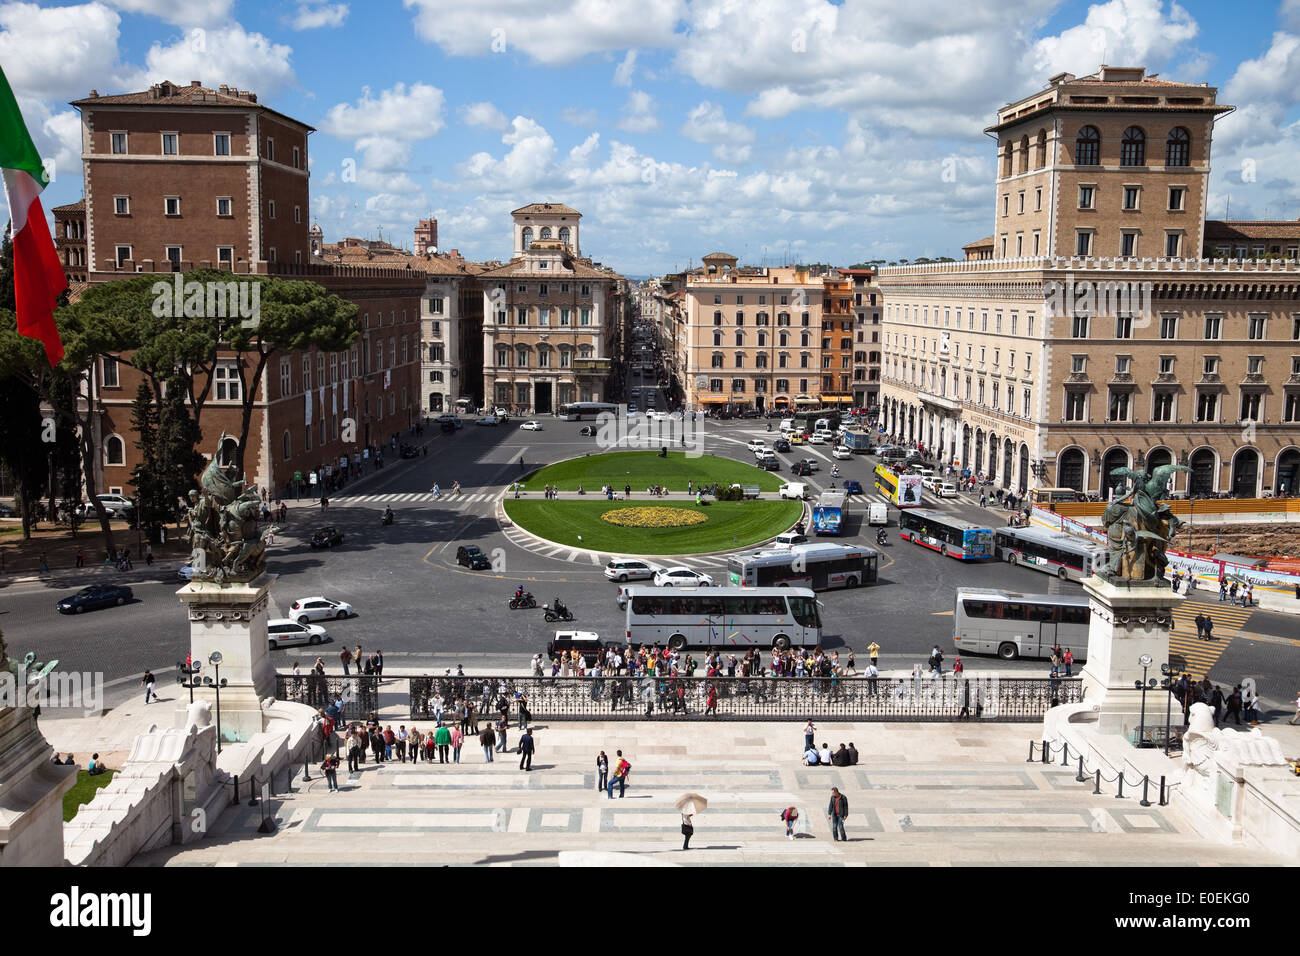 Piazza Venezia, Rom, Italien - Piazza Venezia, Rom, Italien Stockfoto